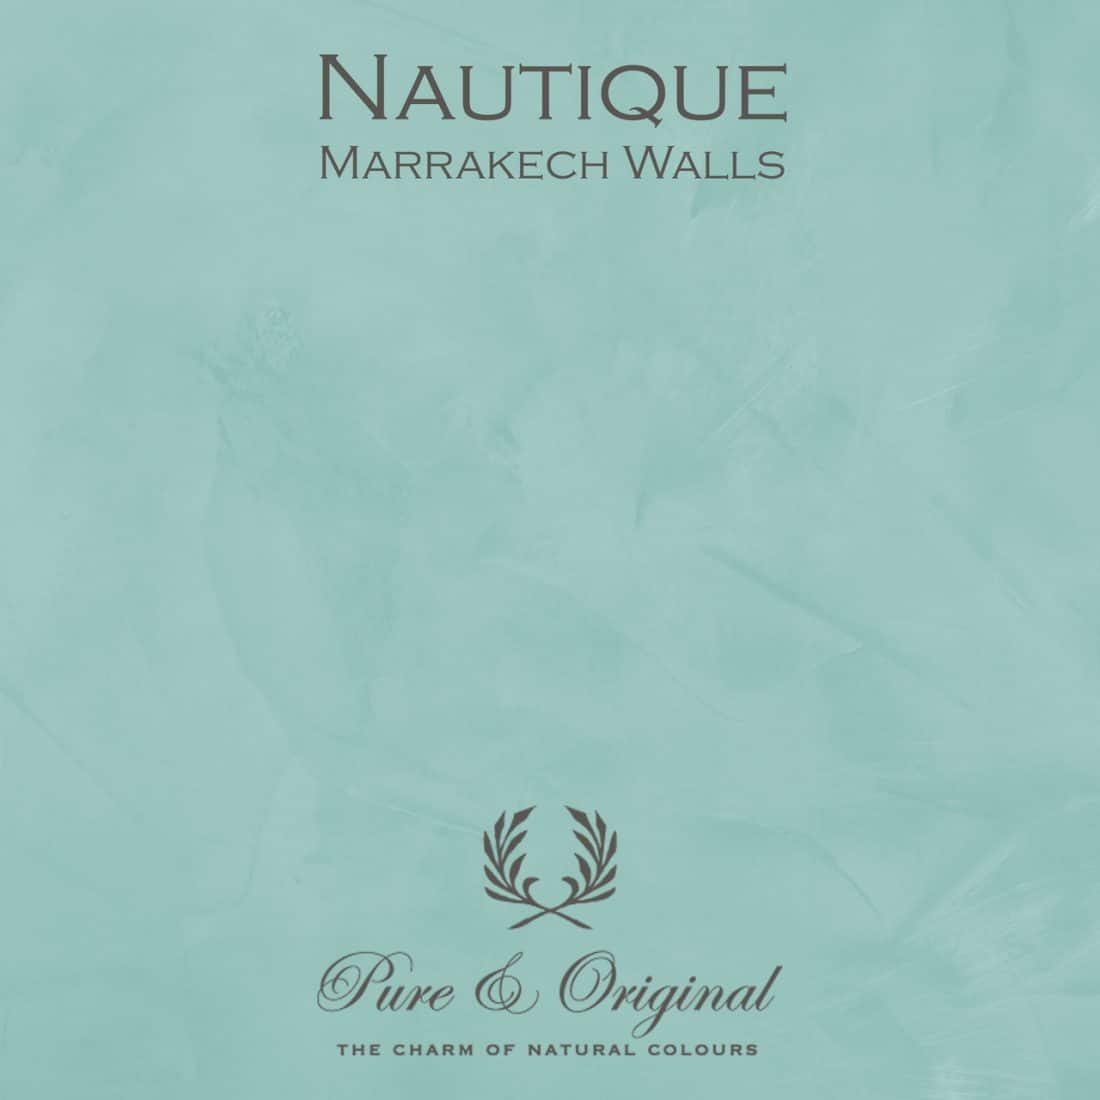 Nautique Marrakech Walls Pure Original